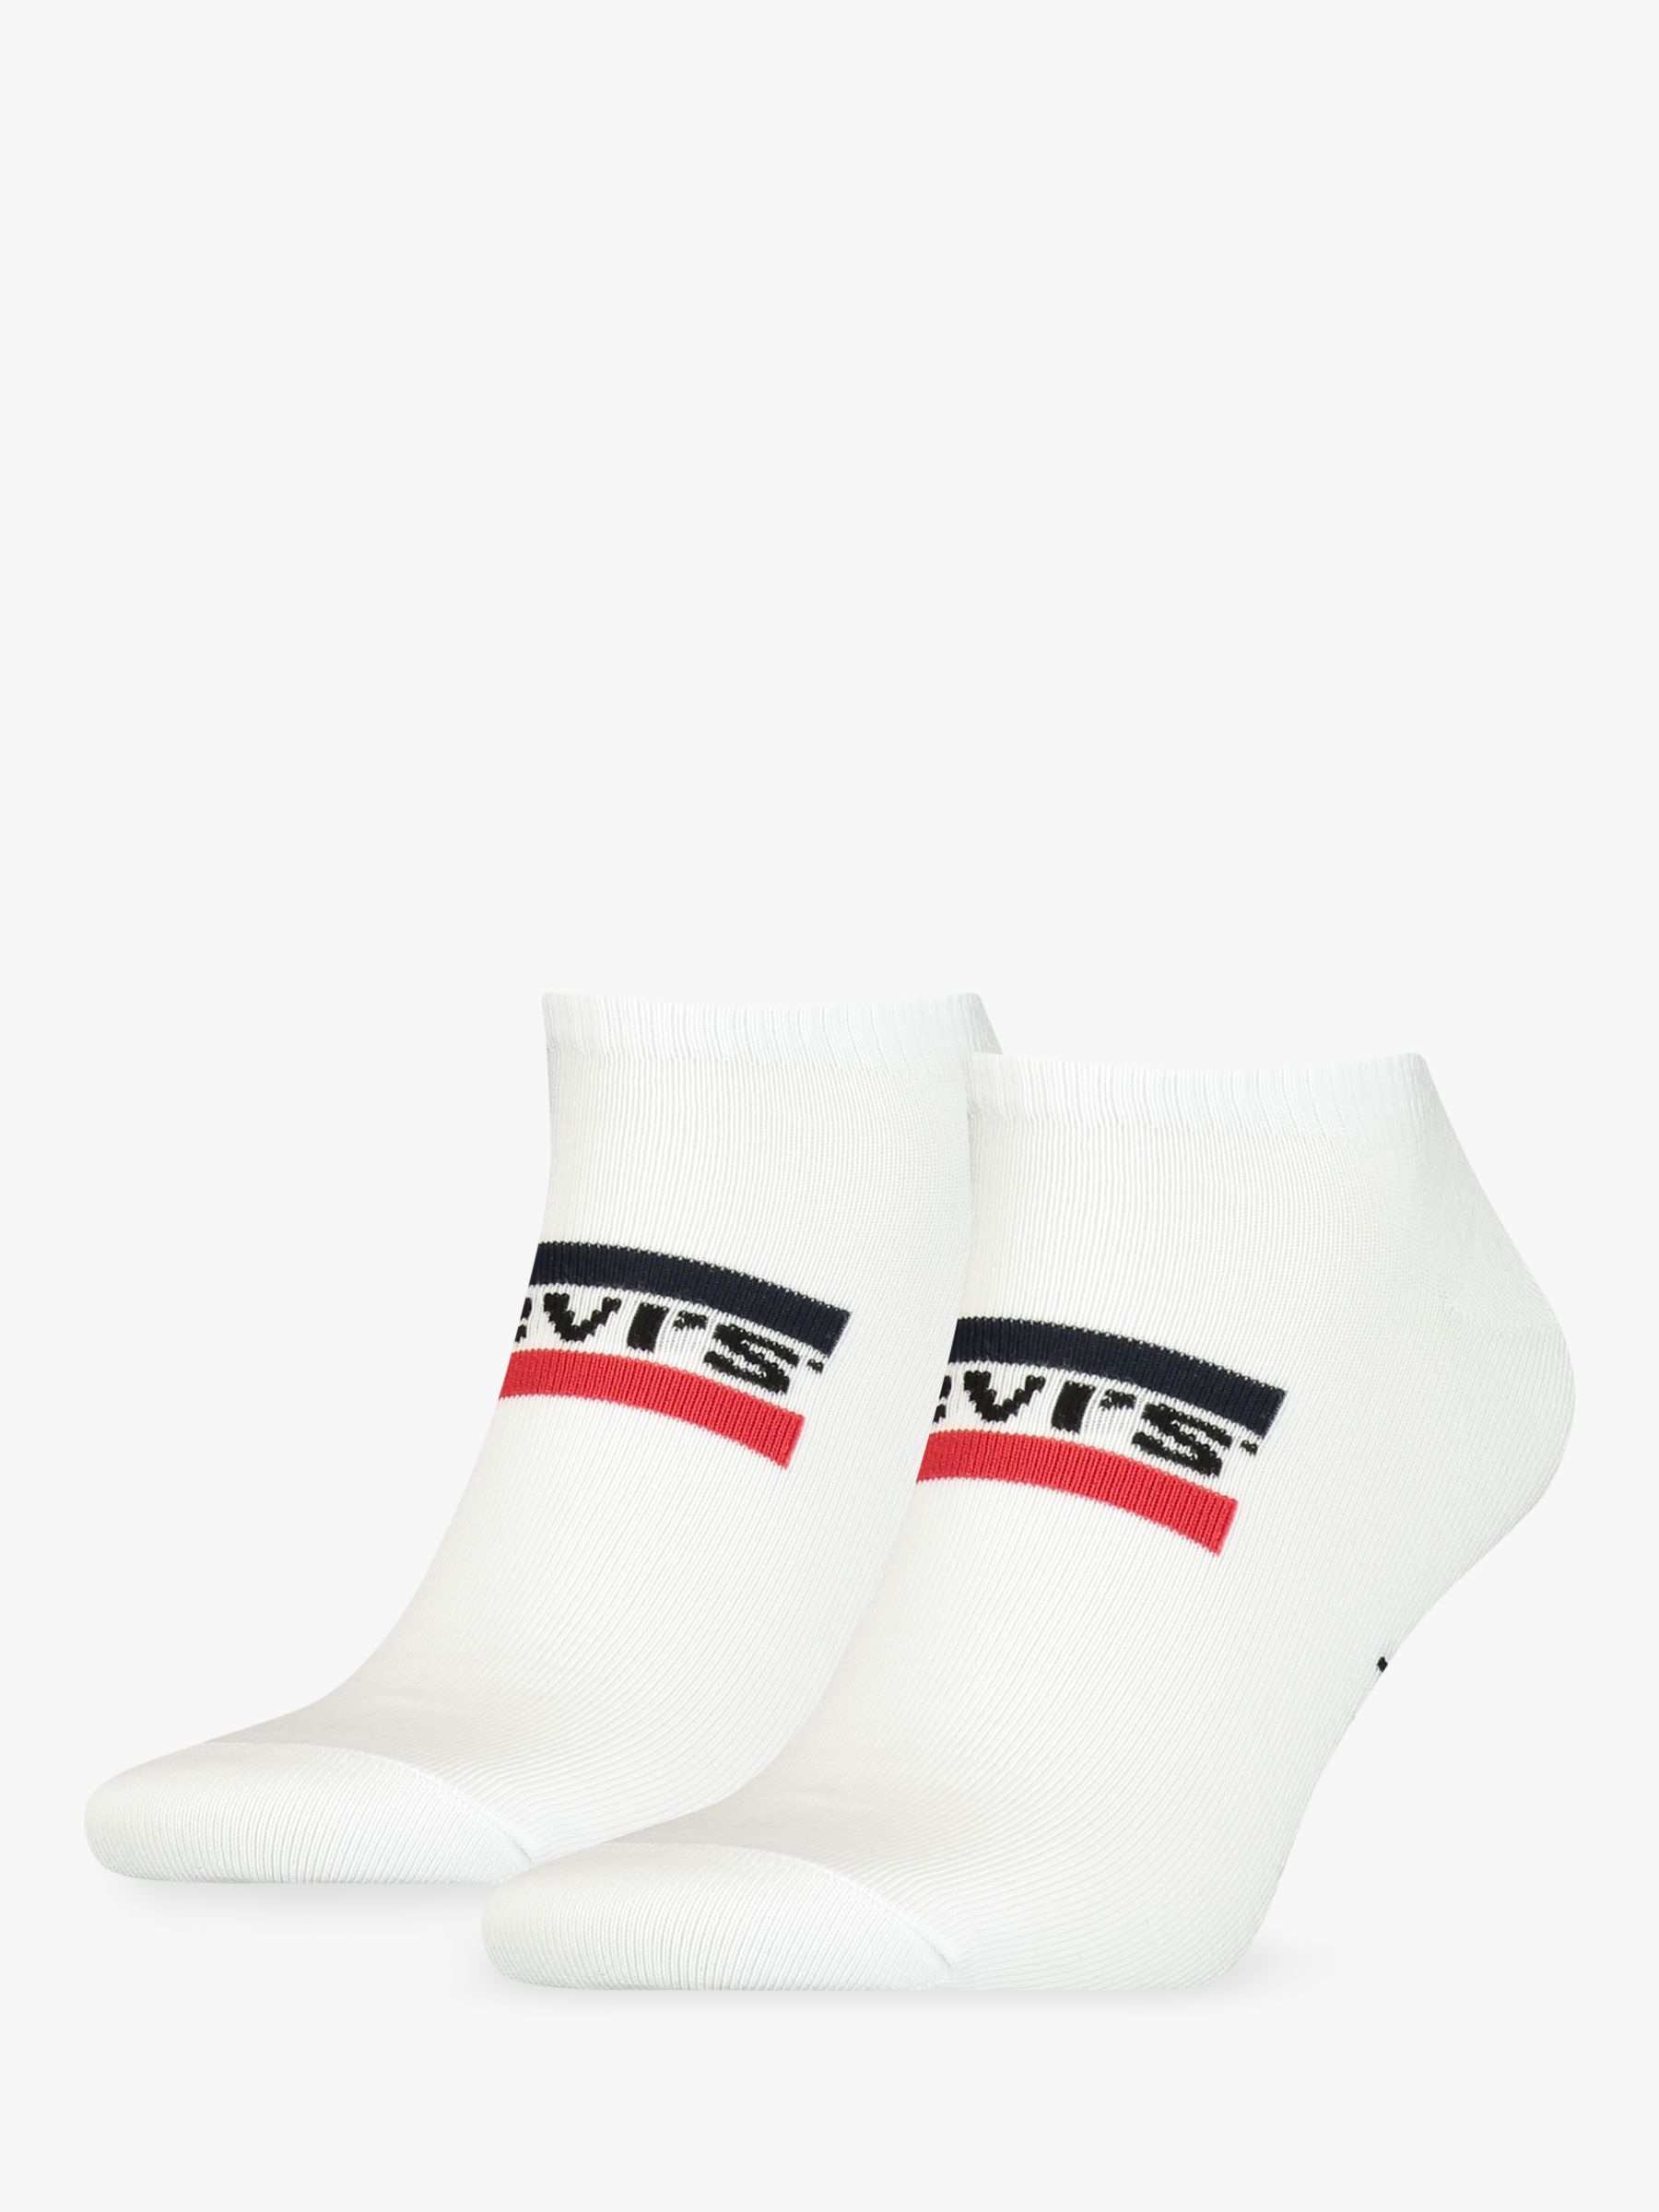 Levi's Low Cut Sportswear Logo Socks, Pack of 2, White S-M male 72% cotton, 26% polymide, 2% elastane